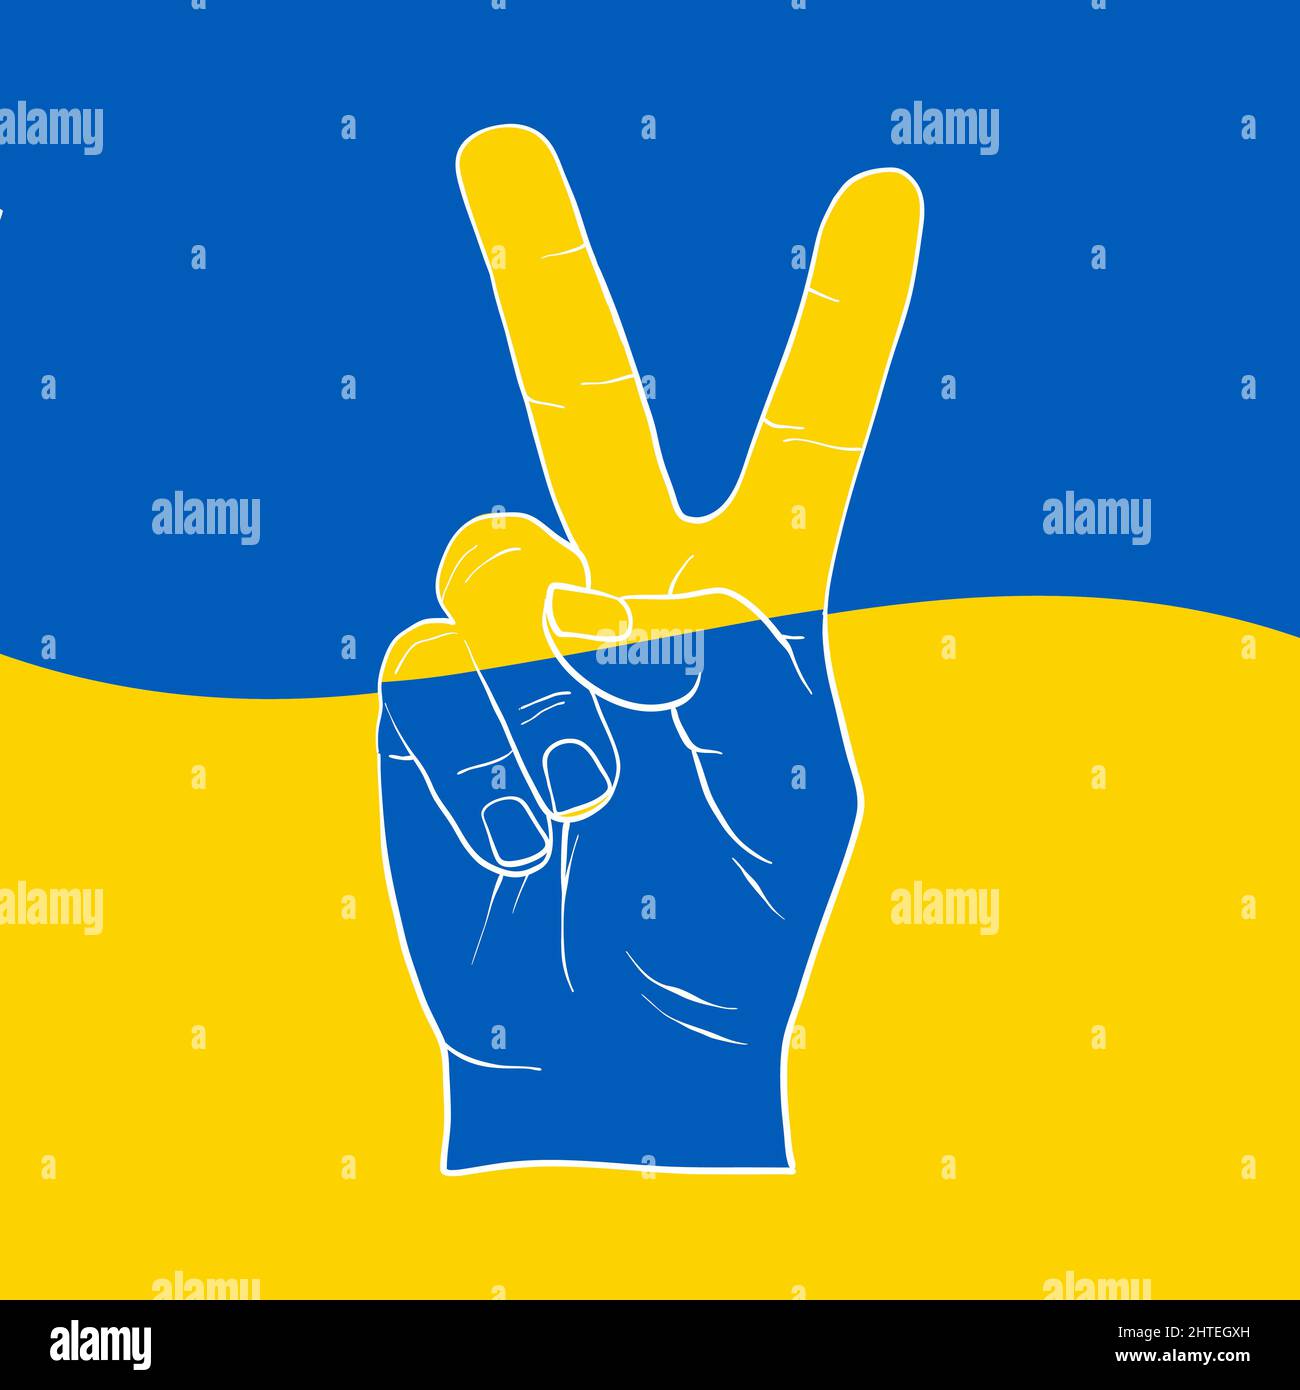 Friedenshand Symbol Freiheit für die ukraine. Symbol für die Unterstützung der Menschen in Kiew und der Ukraine. Gemeinsam stark bleiben. Patriotisches Symbol, Symbol.-ErgänzungKategorien+ Stock Vektor